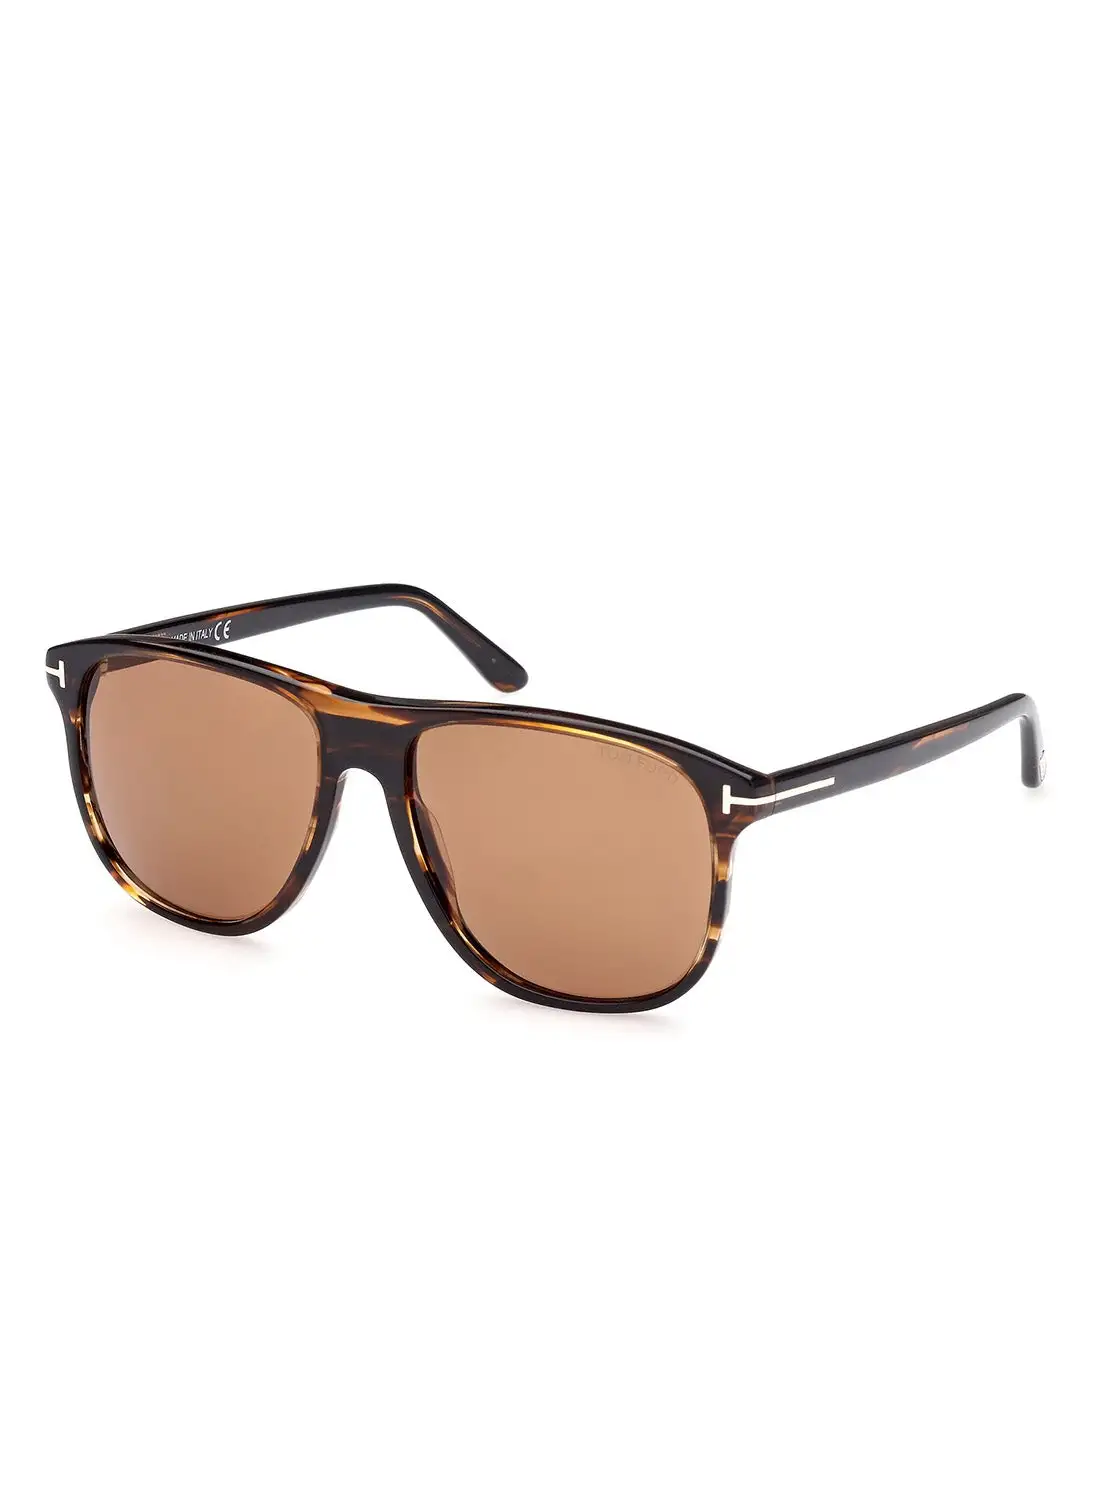 TOM FORD Men's UV Protection Square Sunglasses - FT090550E56 - Lens Size: 56 Mm